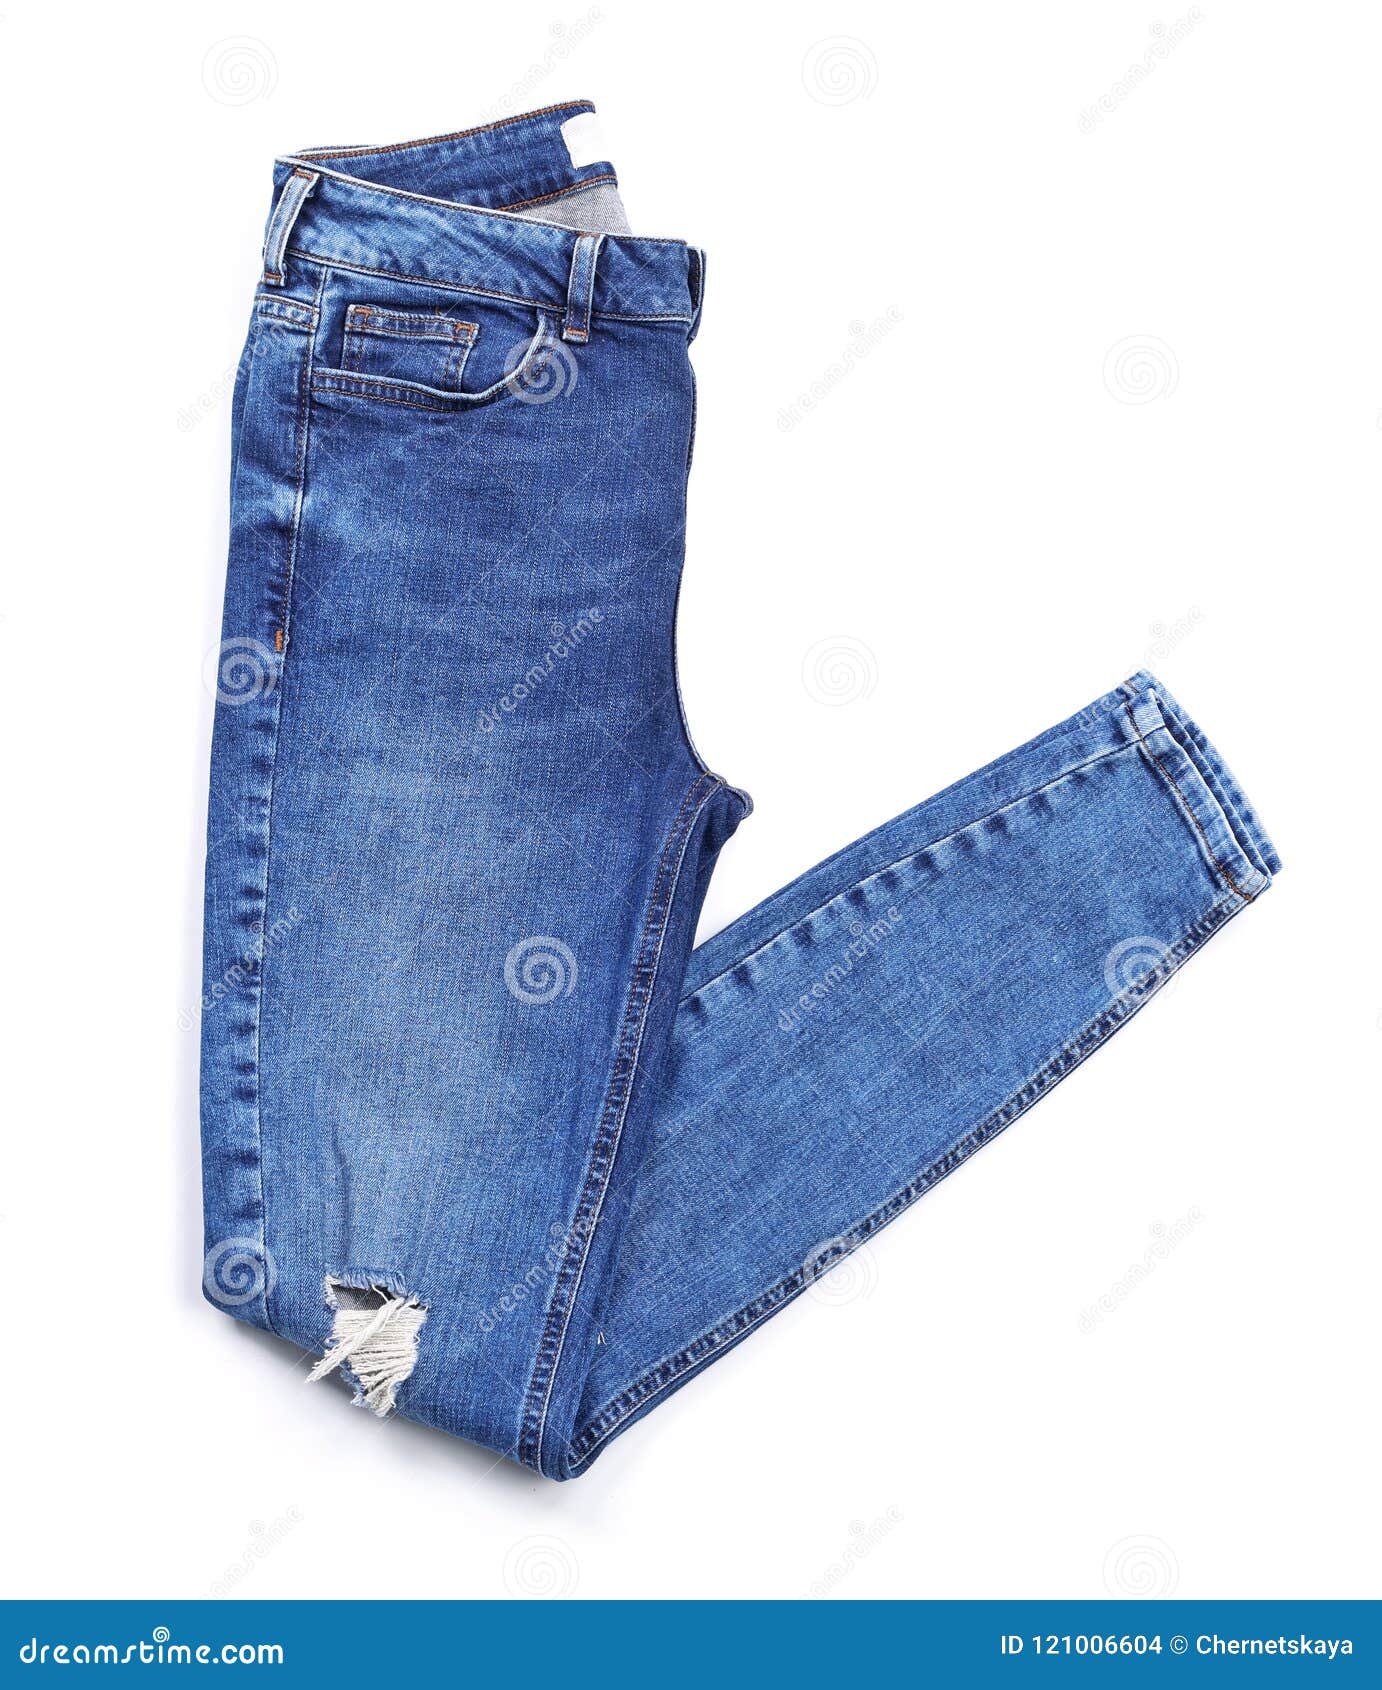 Stylish Jeans on White Background Stock Photo - Image of fabric ...